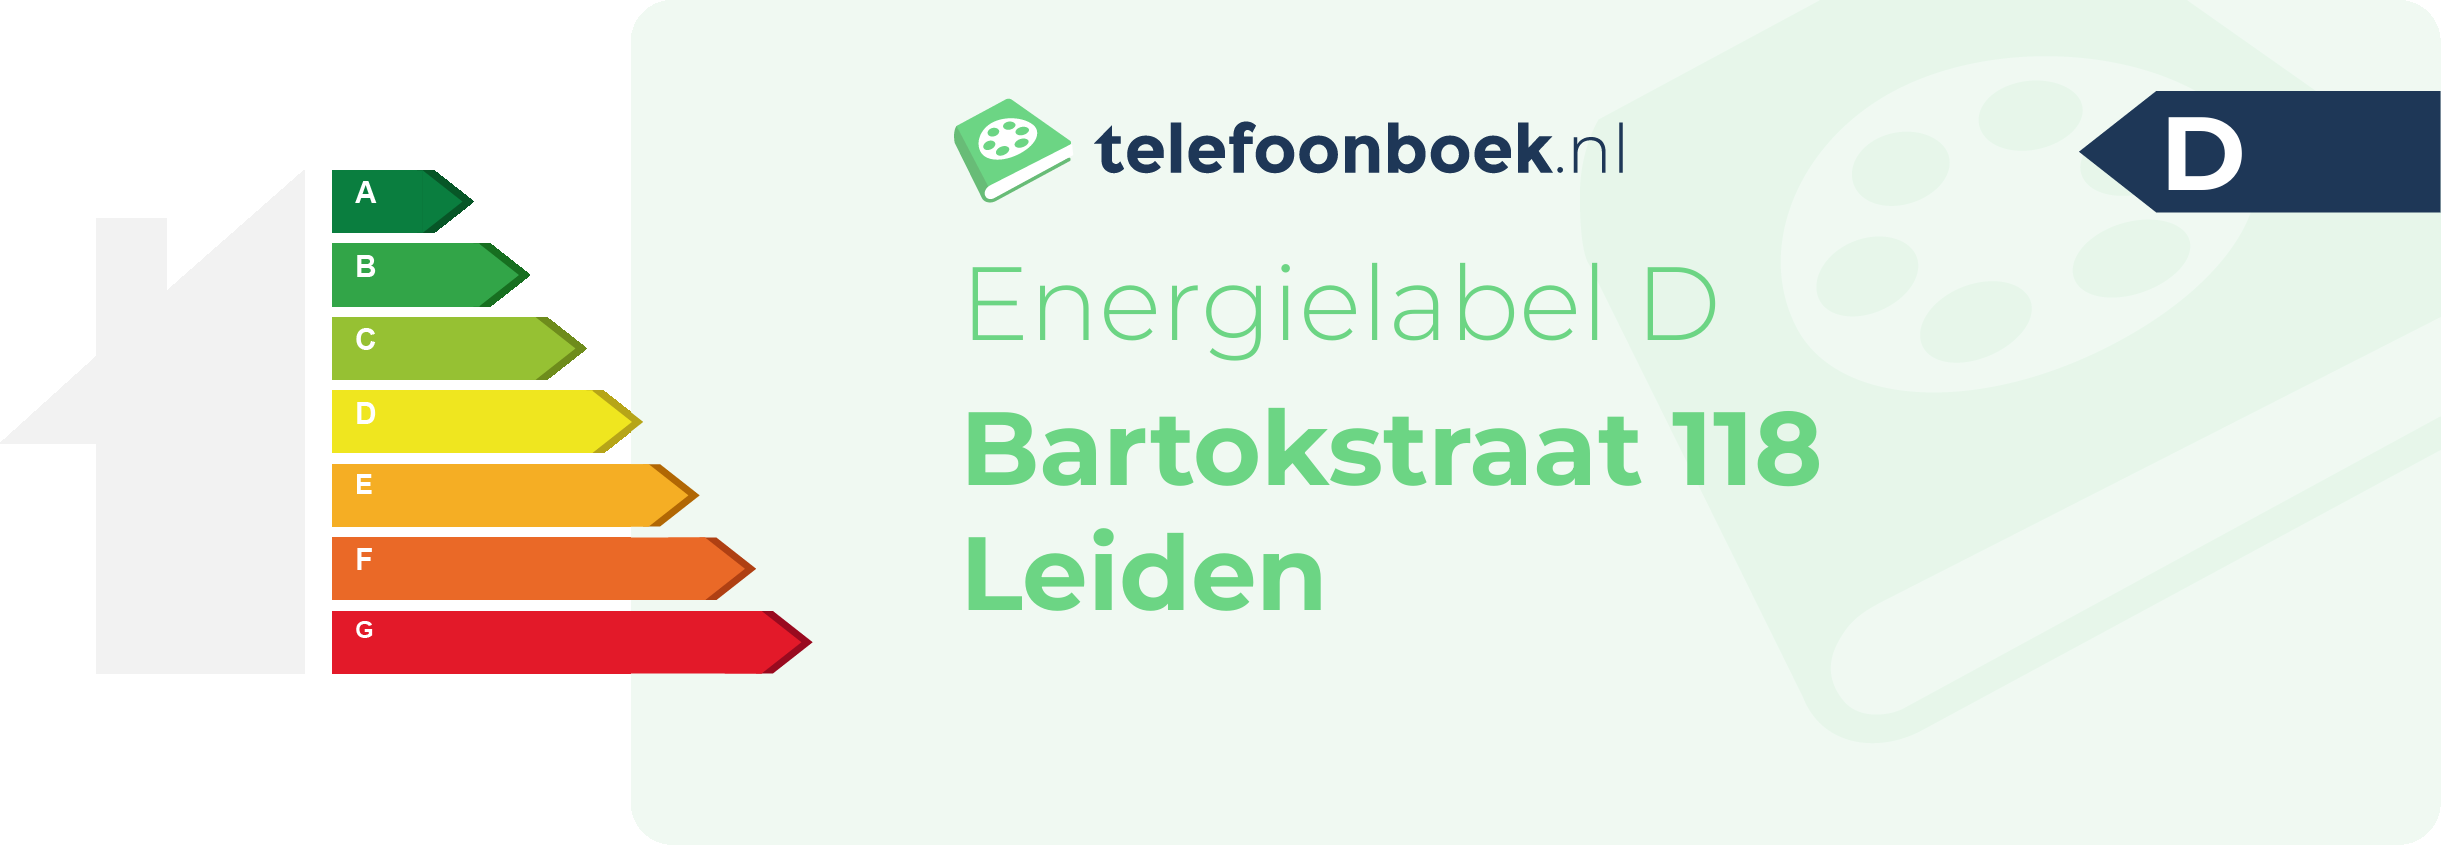 Energielabel Bartokstraat 118 Leiden